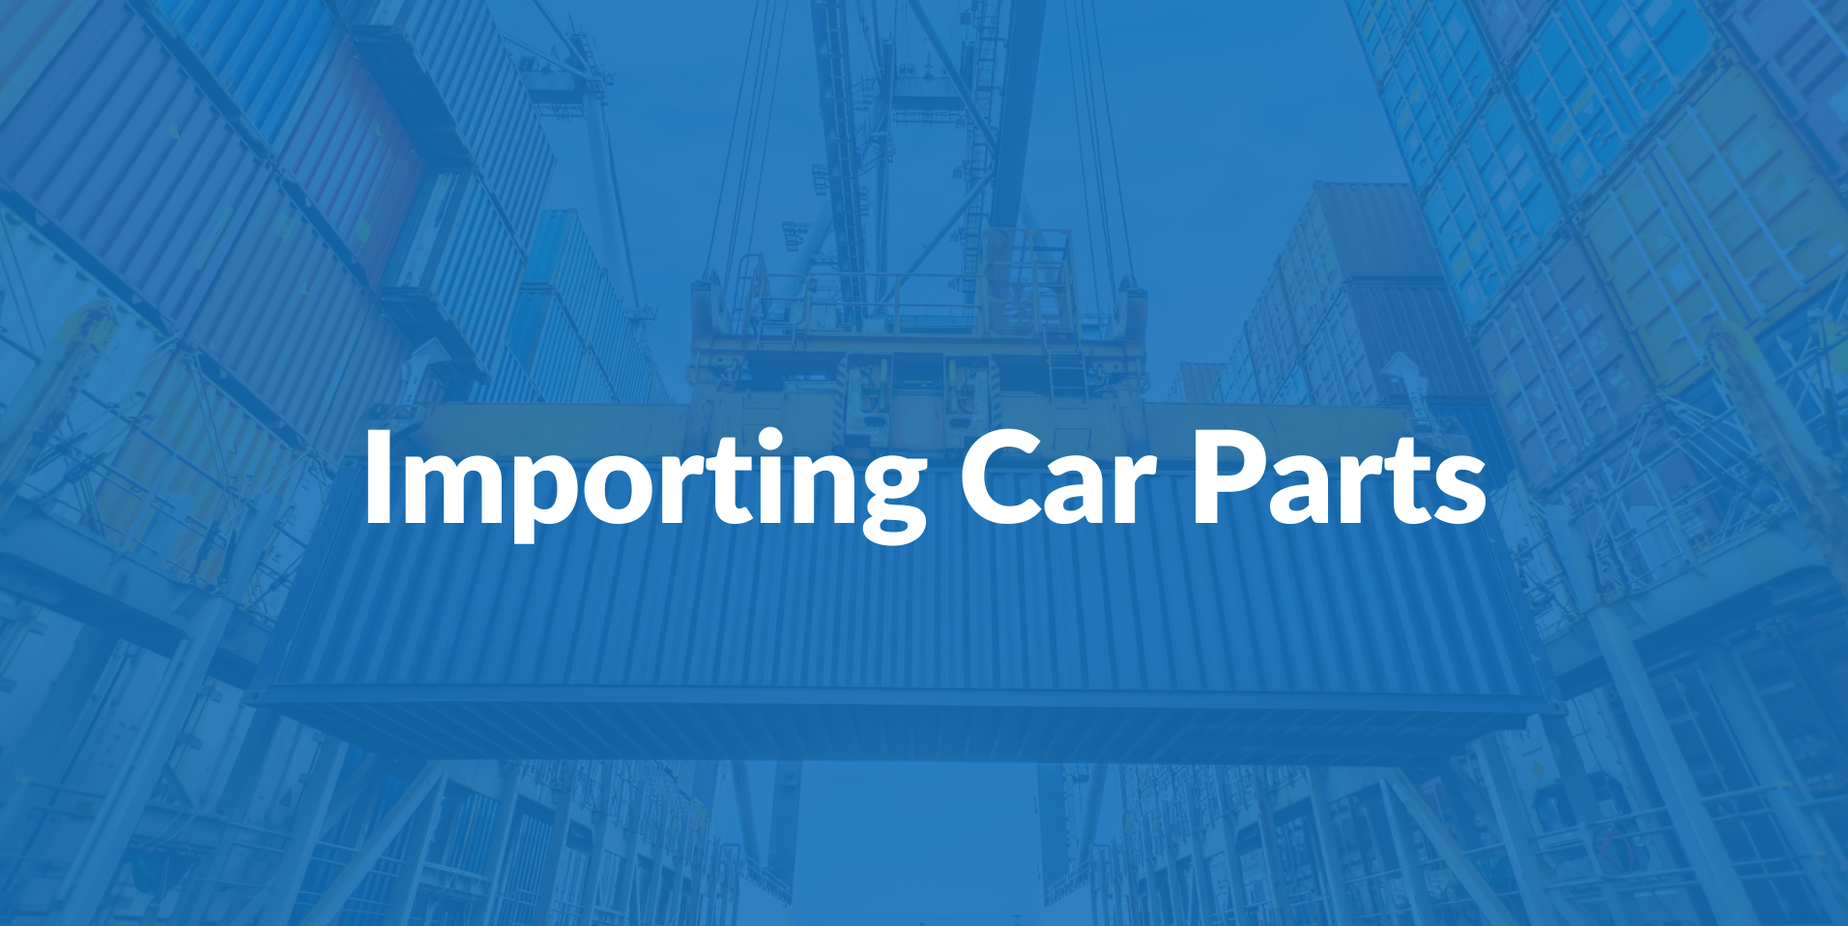 import-car-parts.png